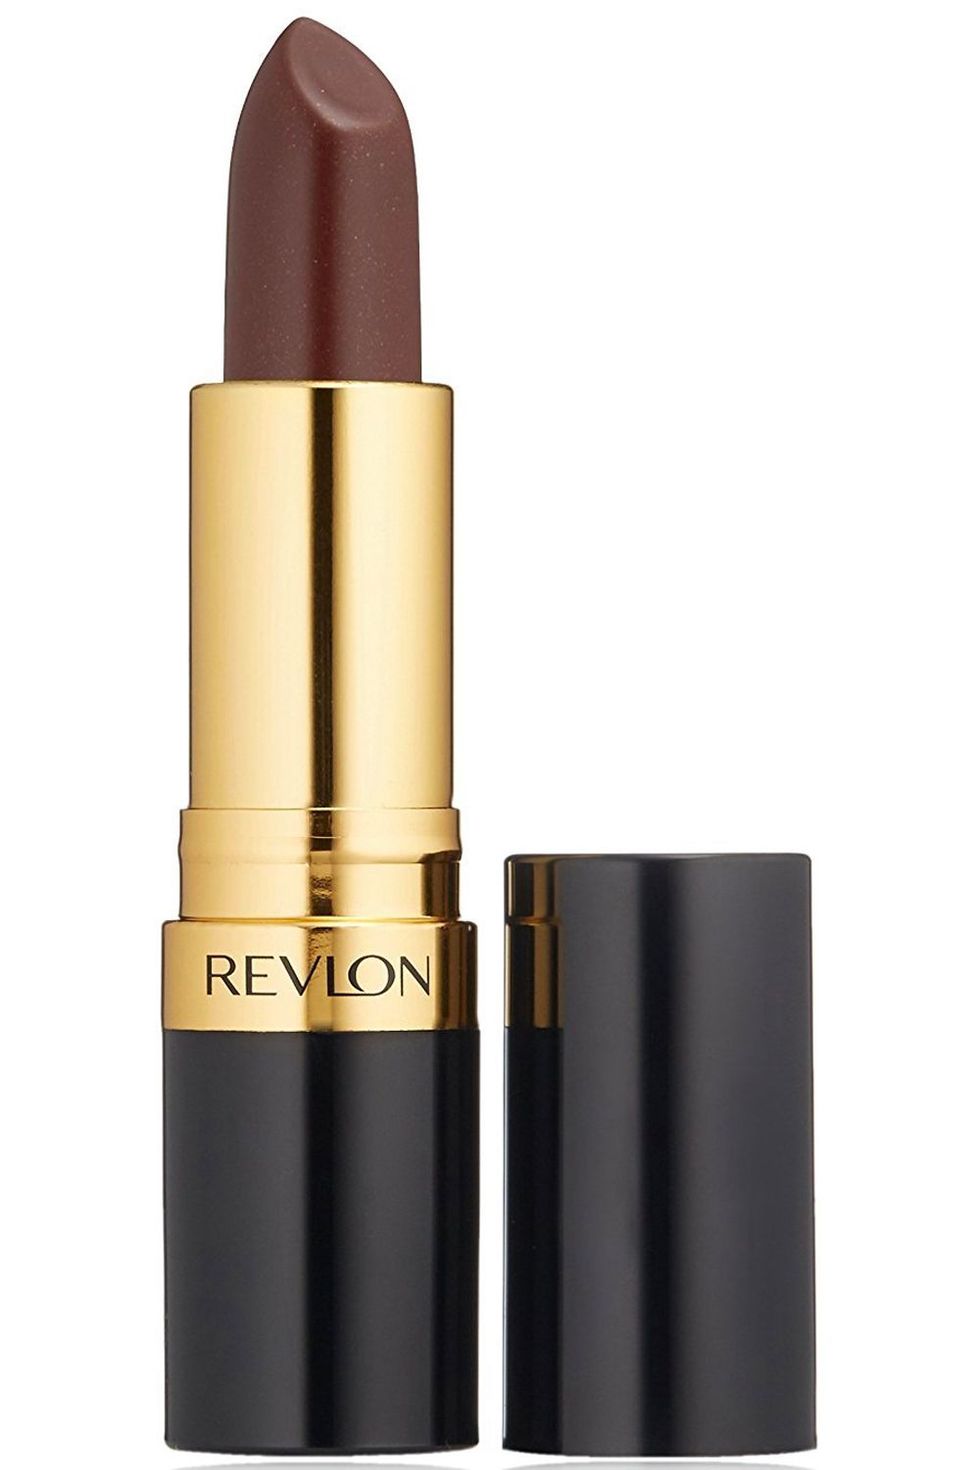 Revlon Super Lustrous Lipstick in Choco-Liscious